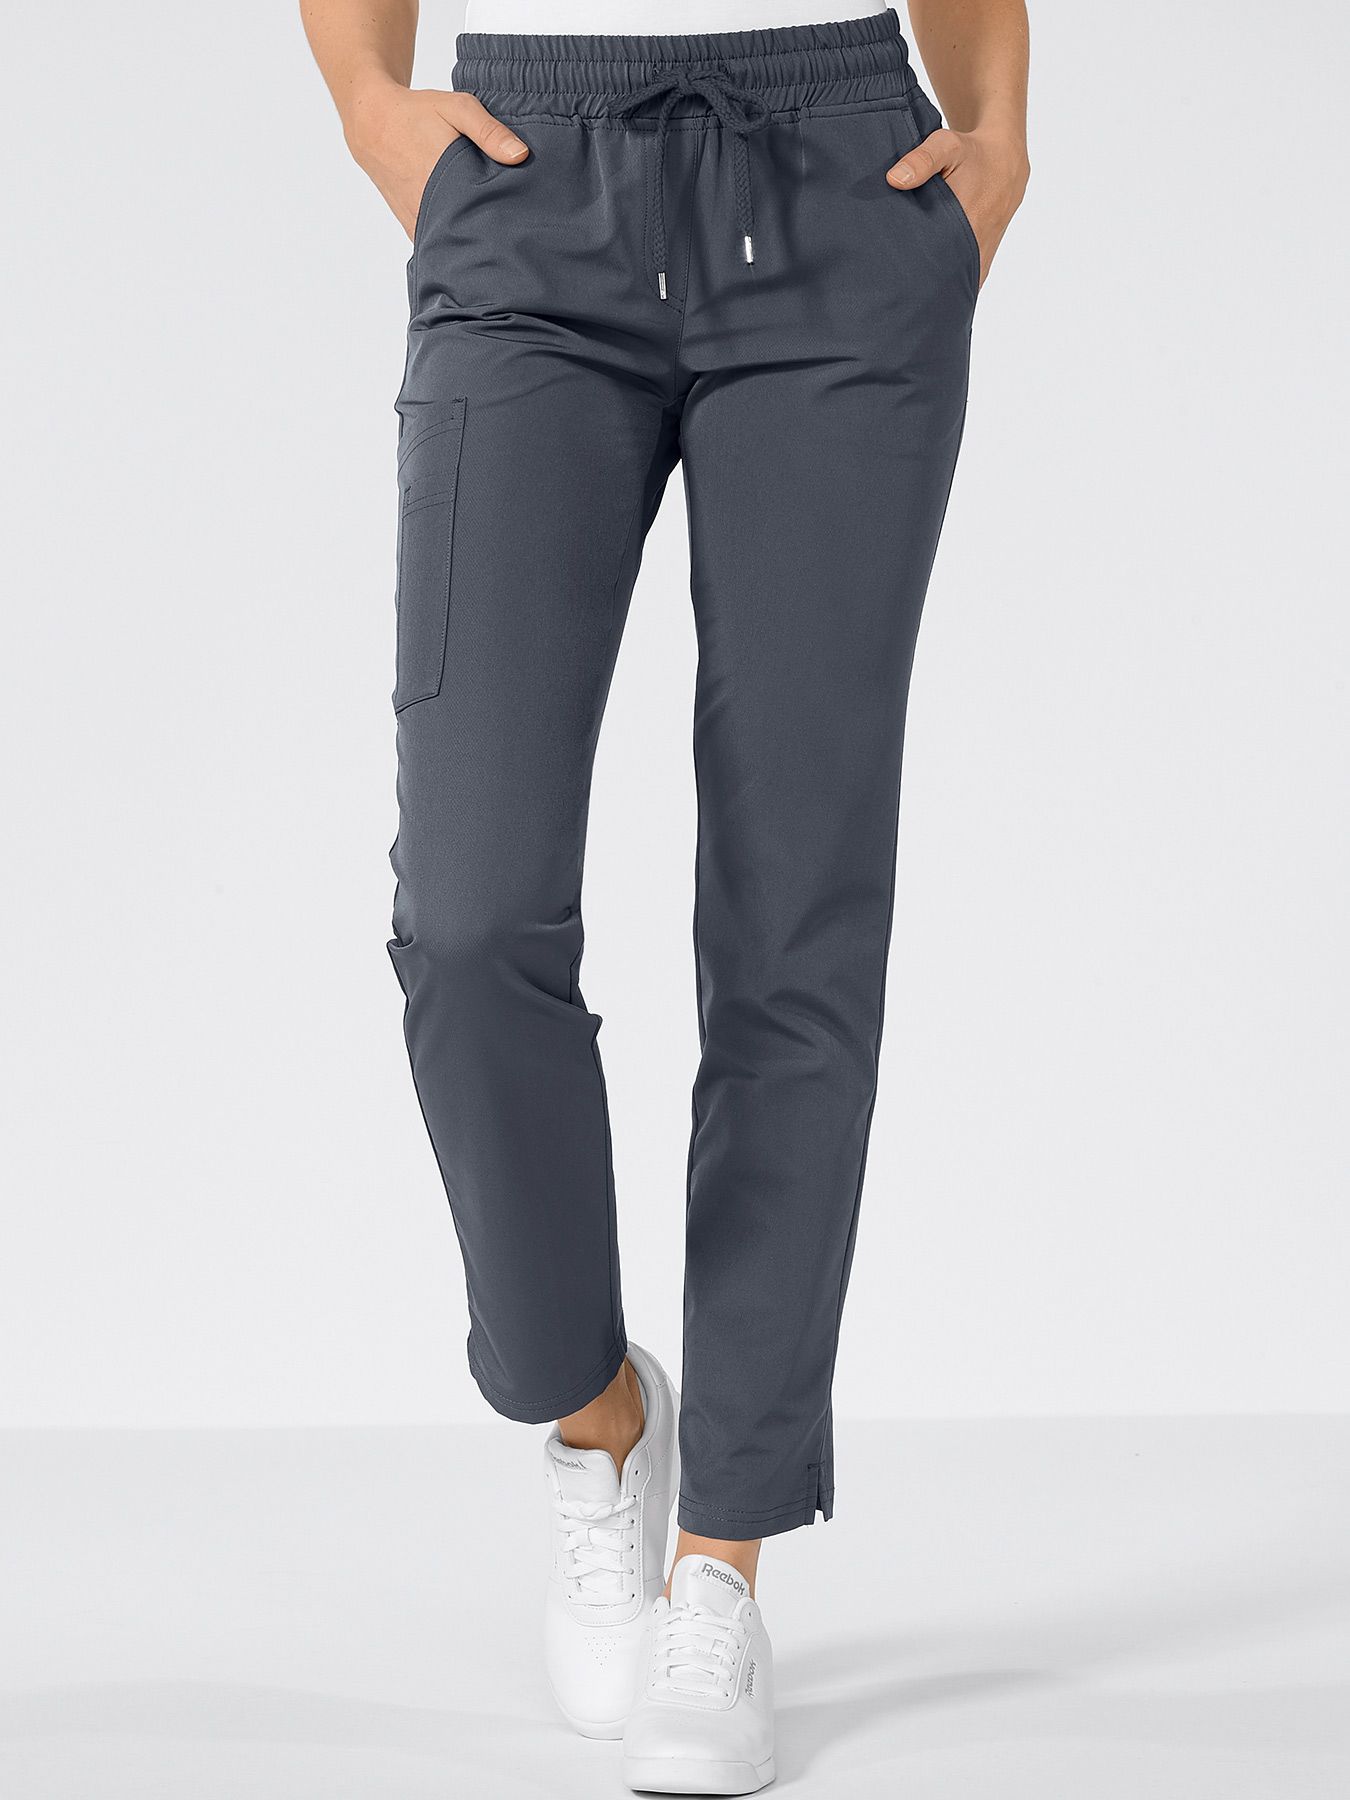 Pantalon à extension active avec poches jambes 7days jobwear Suisse